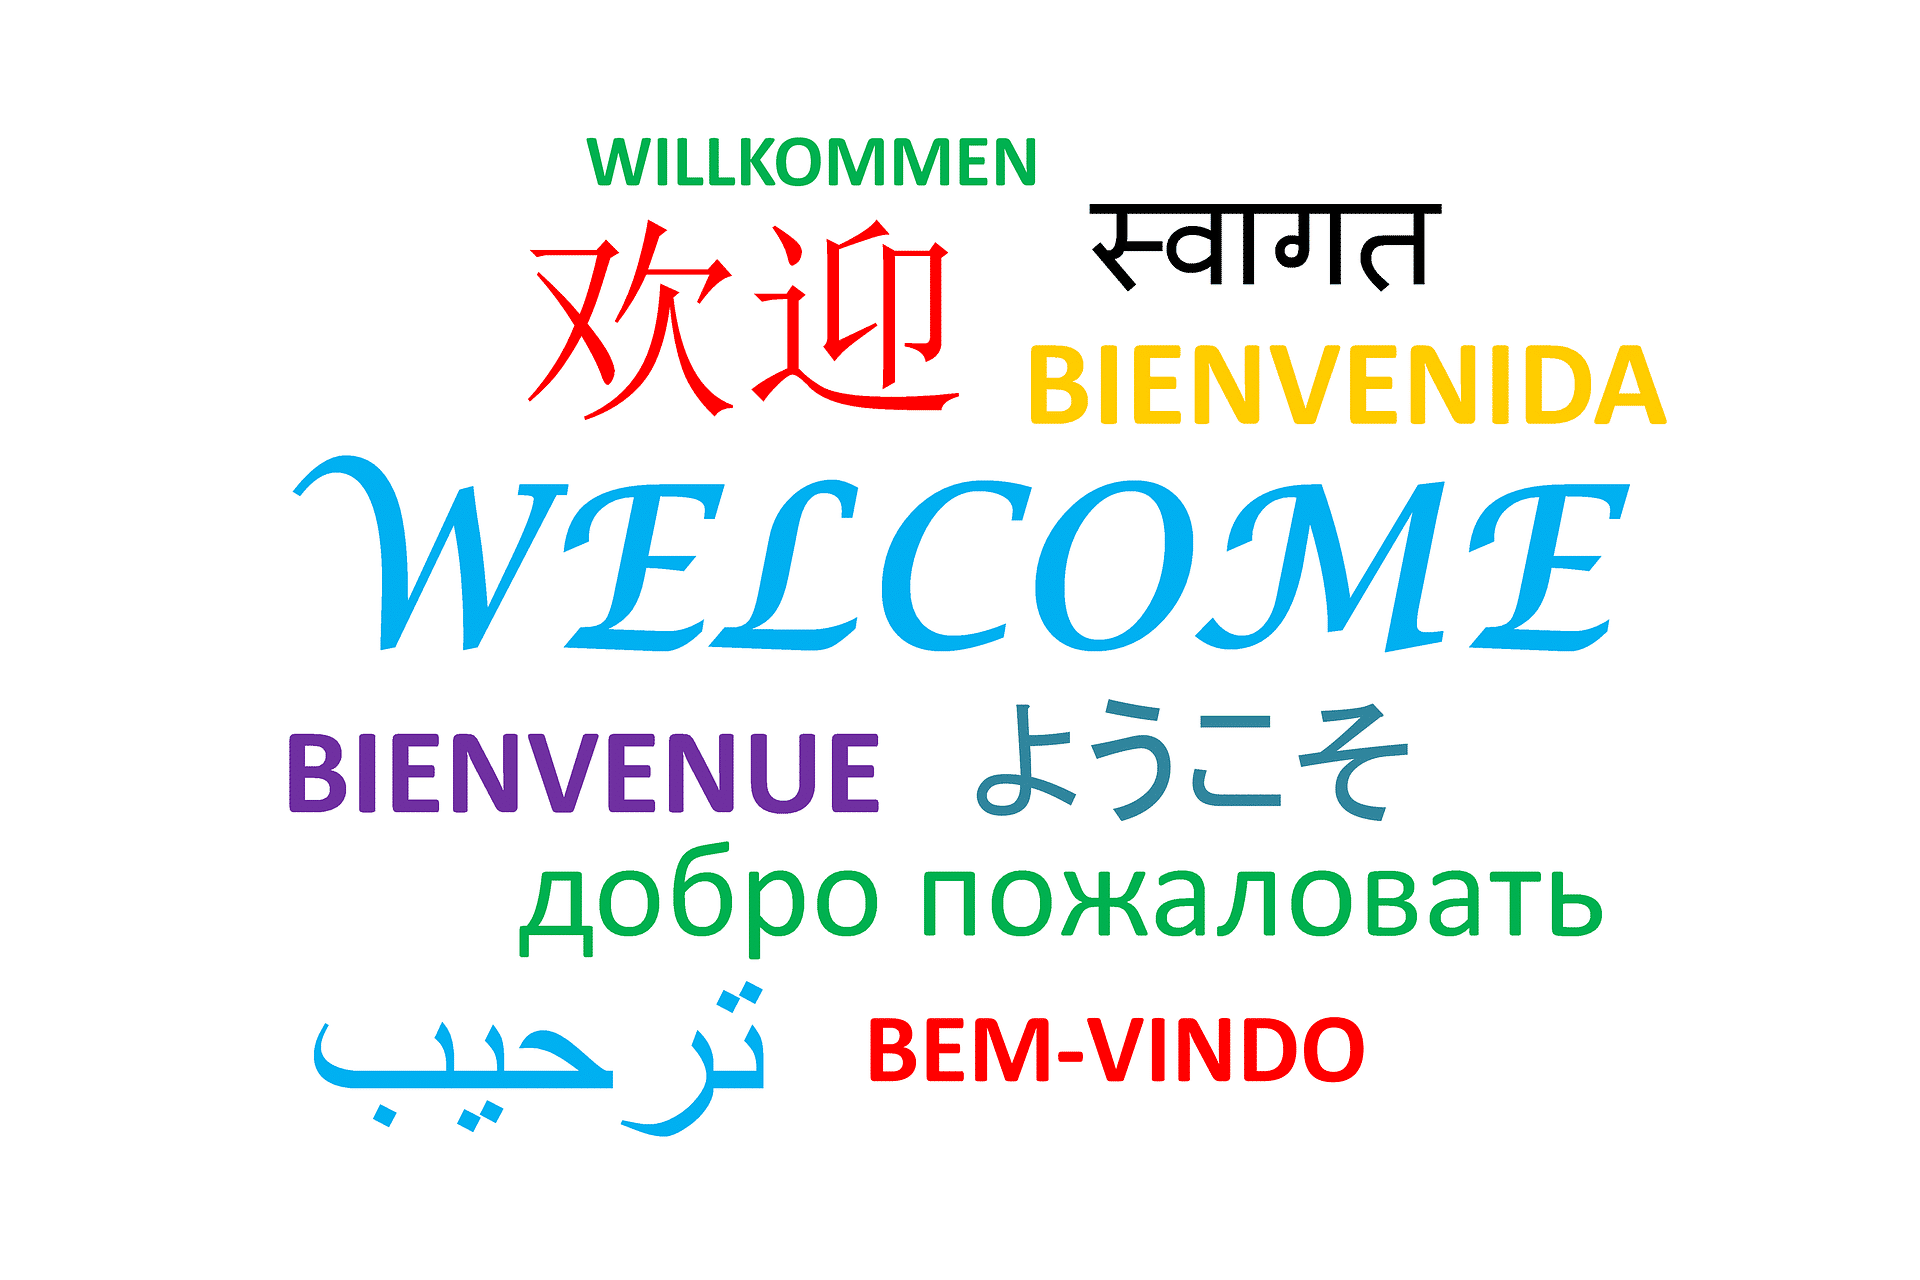 Bienvenida en diferentes idiomas